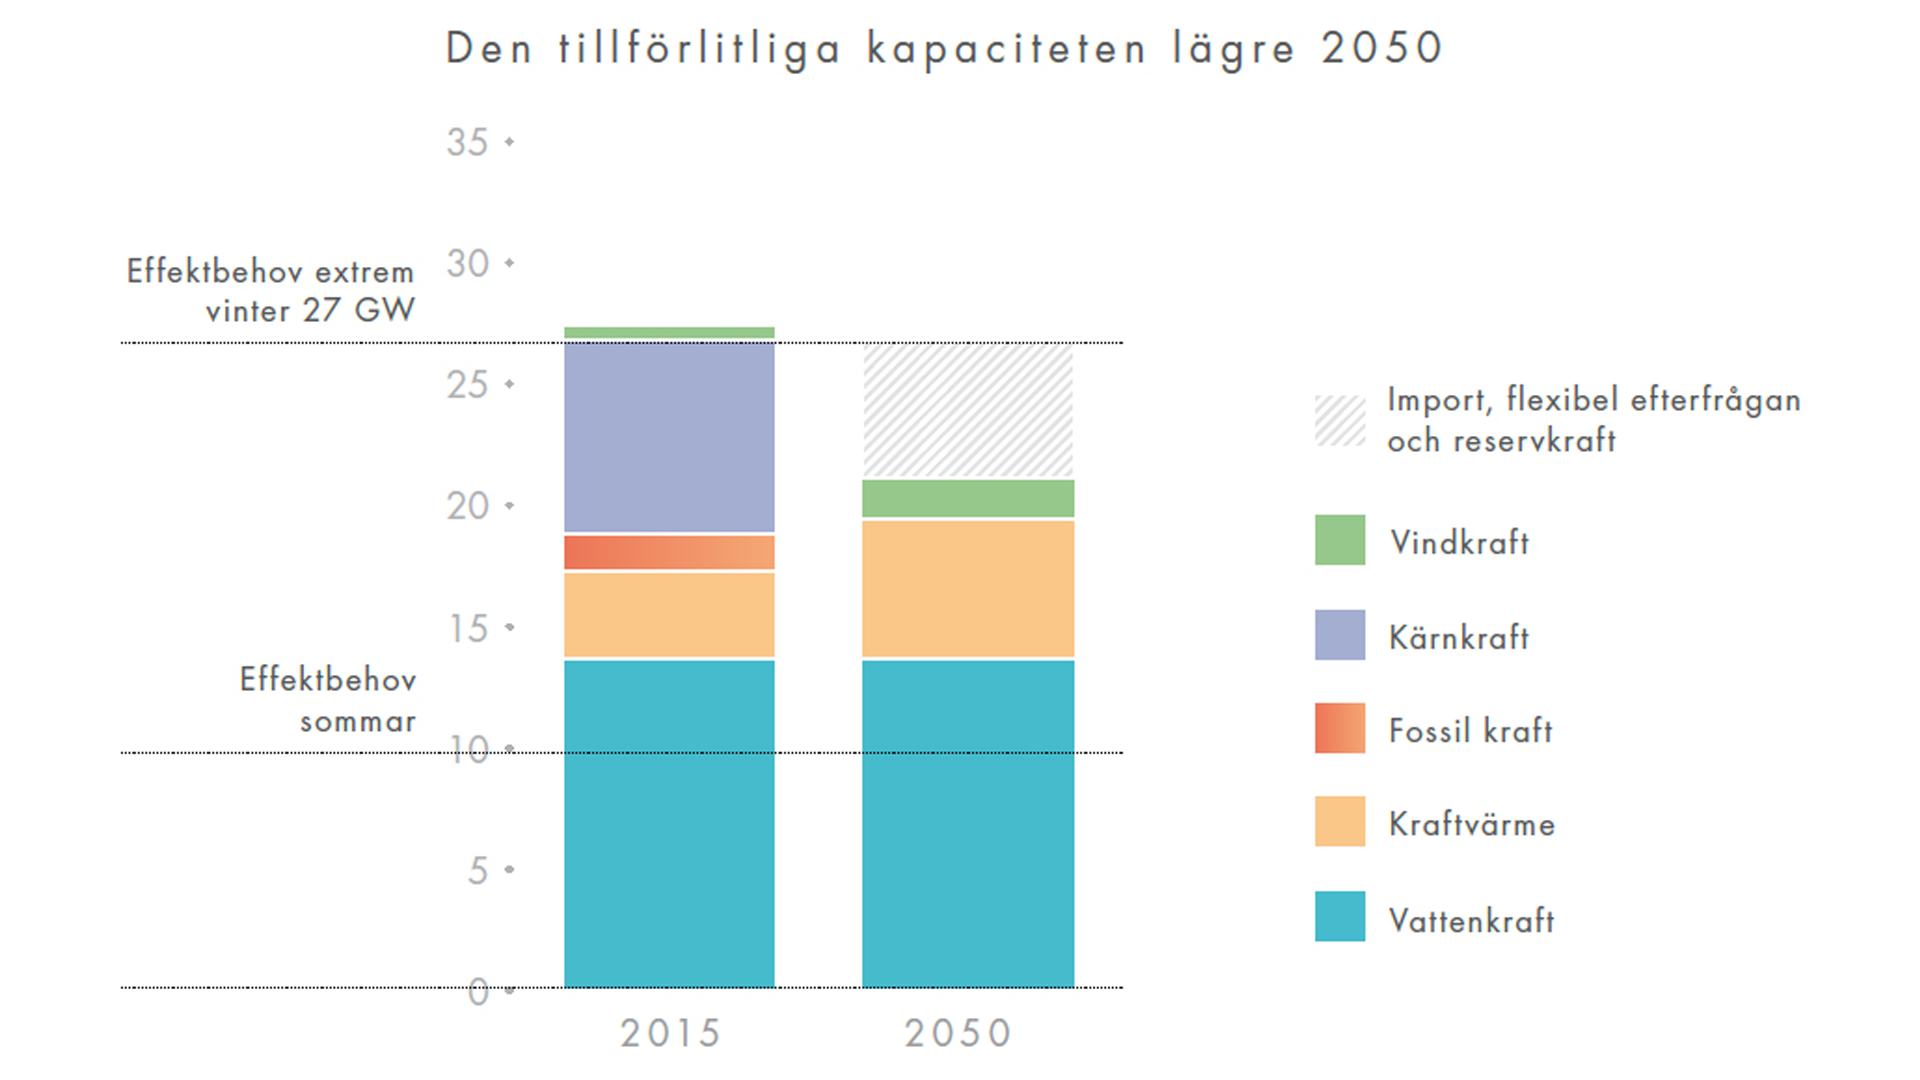 Graf som visar kapacitet och effektbehov 2015 och 2050